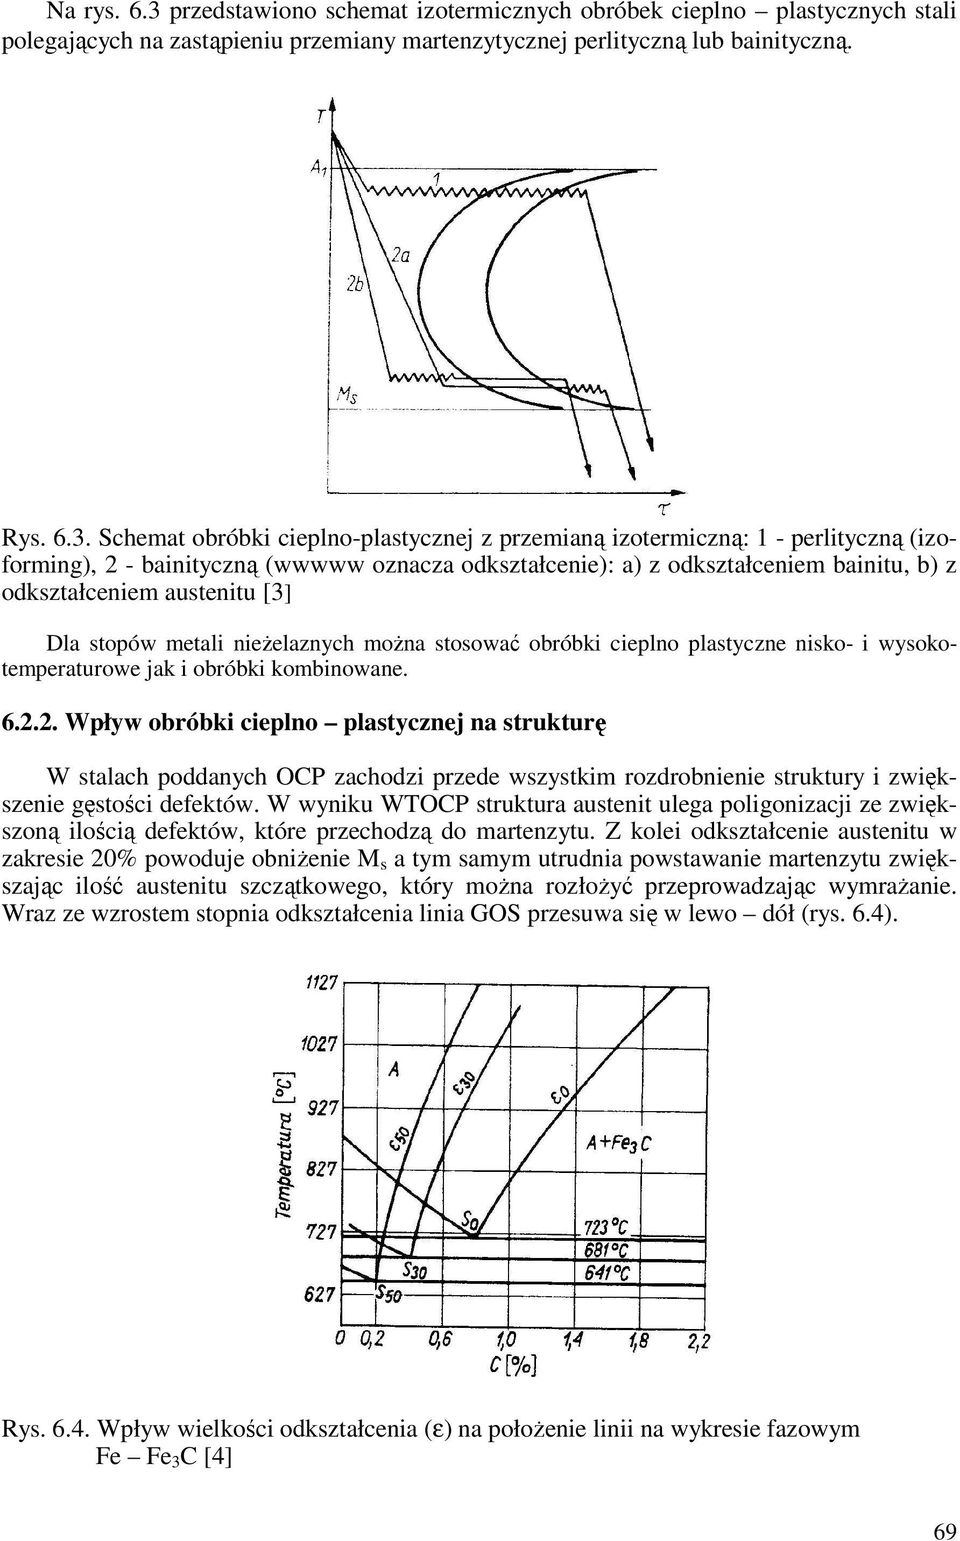 Schemat obróbki cieplno-plastycznej z przemianą izotermiczną: 1 - perlityczną (izoforming), 2 - bainityczną (wwwww oznacza odkształcenie): a) z odkształceniem bainitu, b) z odkształceniem austenitu